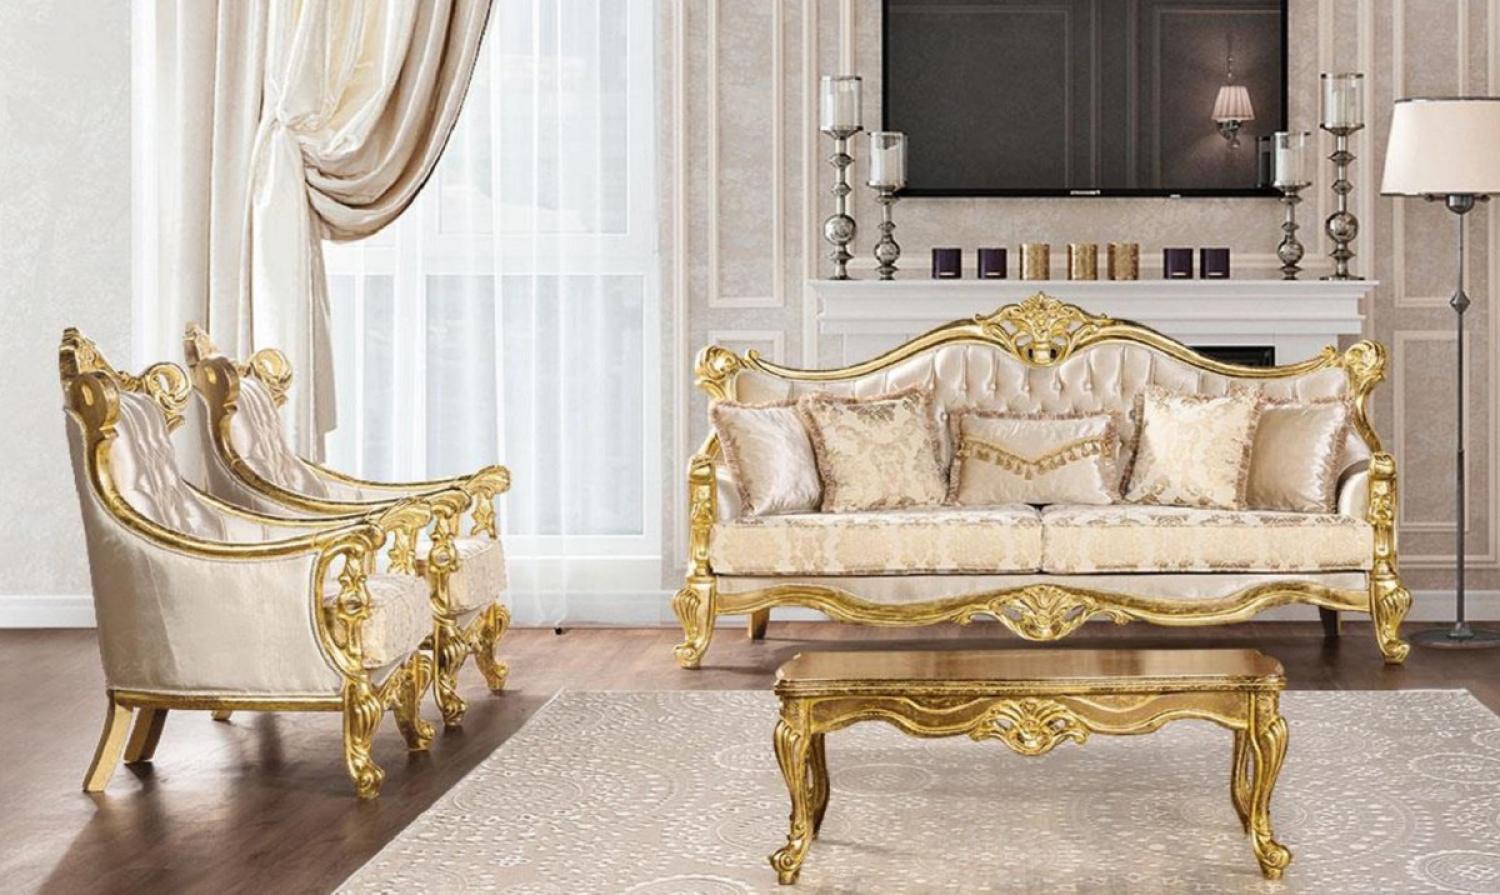 Casa Padrino Luxus Barock Wohnzimmer Set Beige / Gold - 2 Barock Sofas mit Muster & 2 Barock Sessel mit Muster & 1 Barock Couchtisch - Barock Wohnzimmer Möbel Bild 1